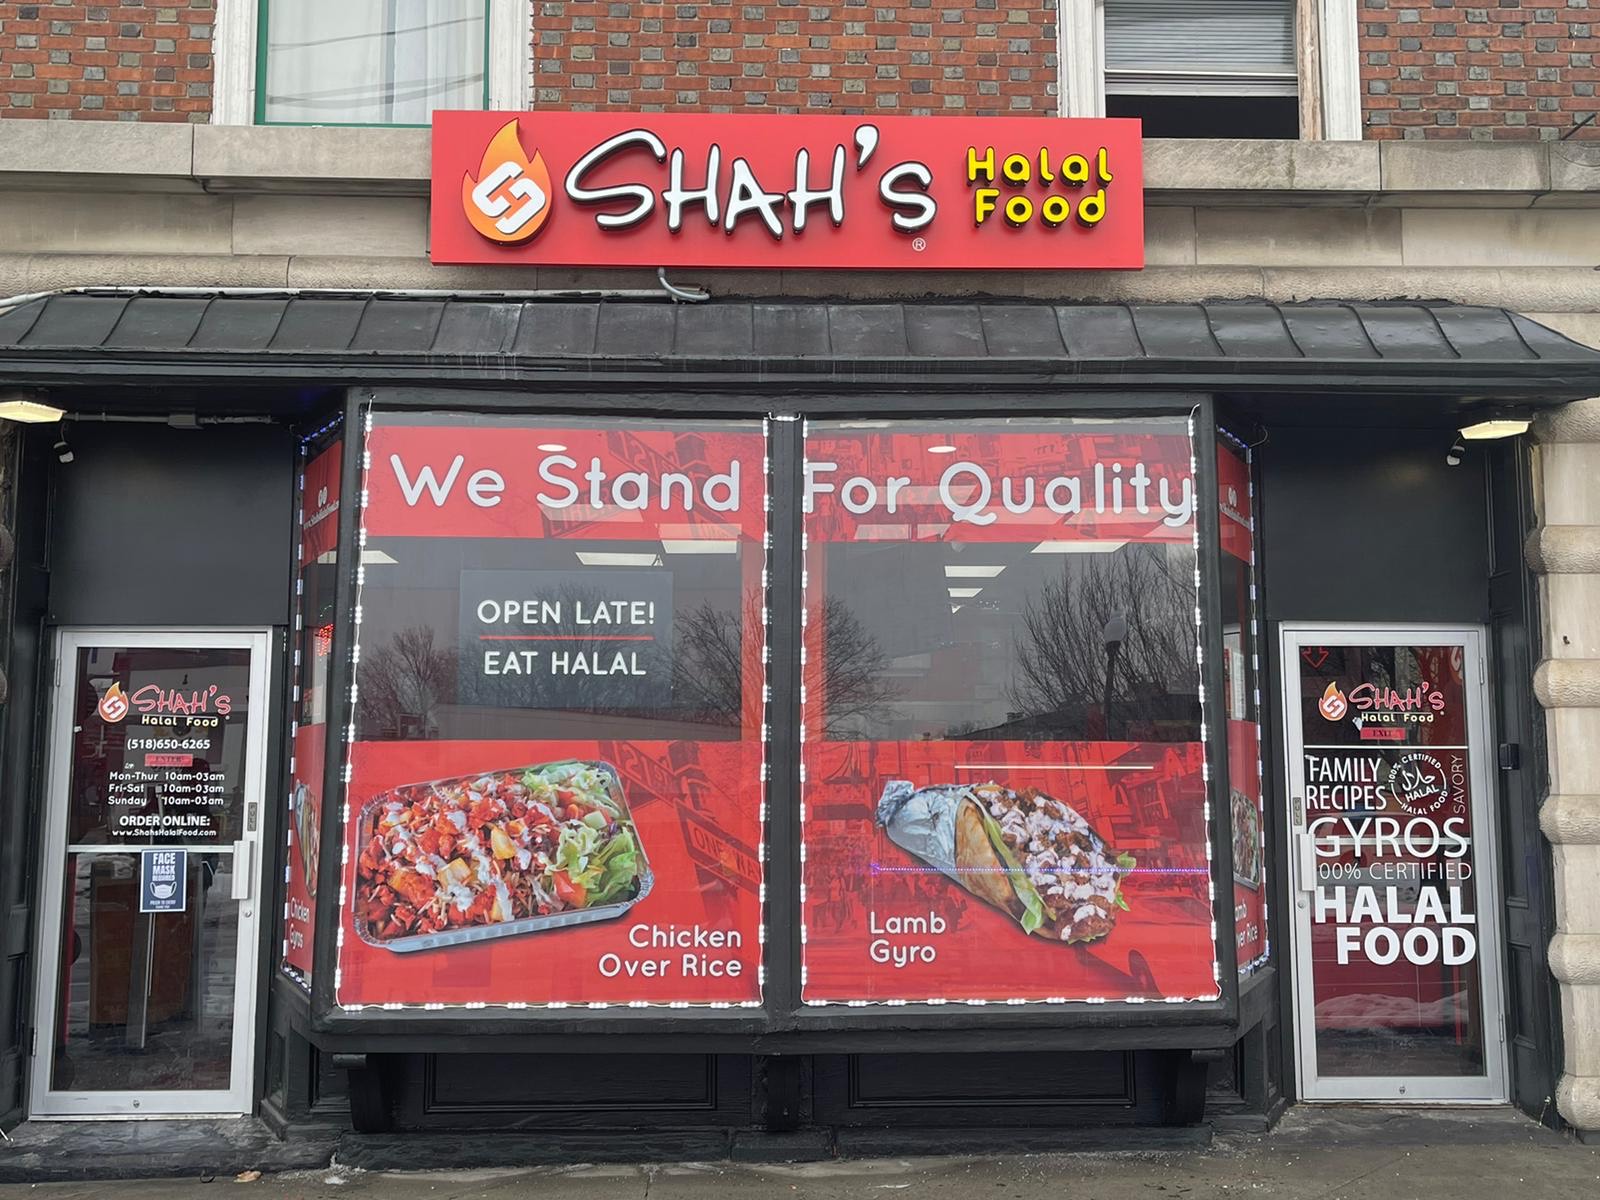 Shah's Halal Food